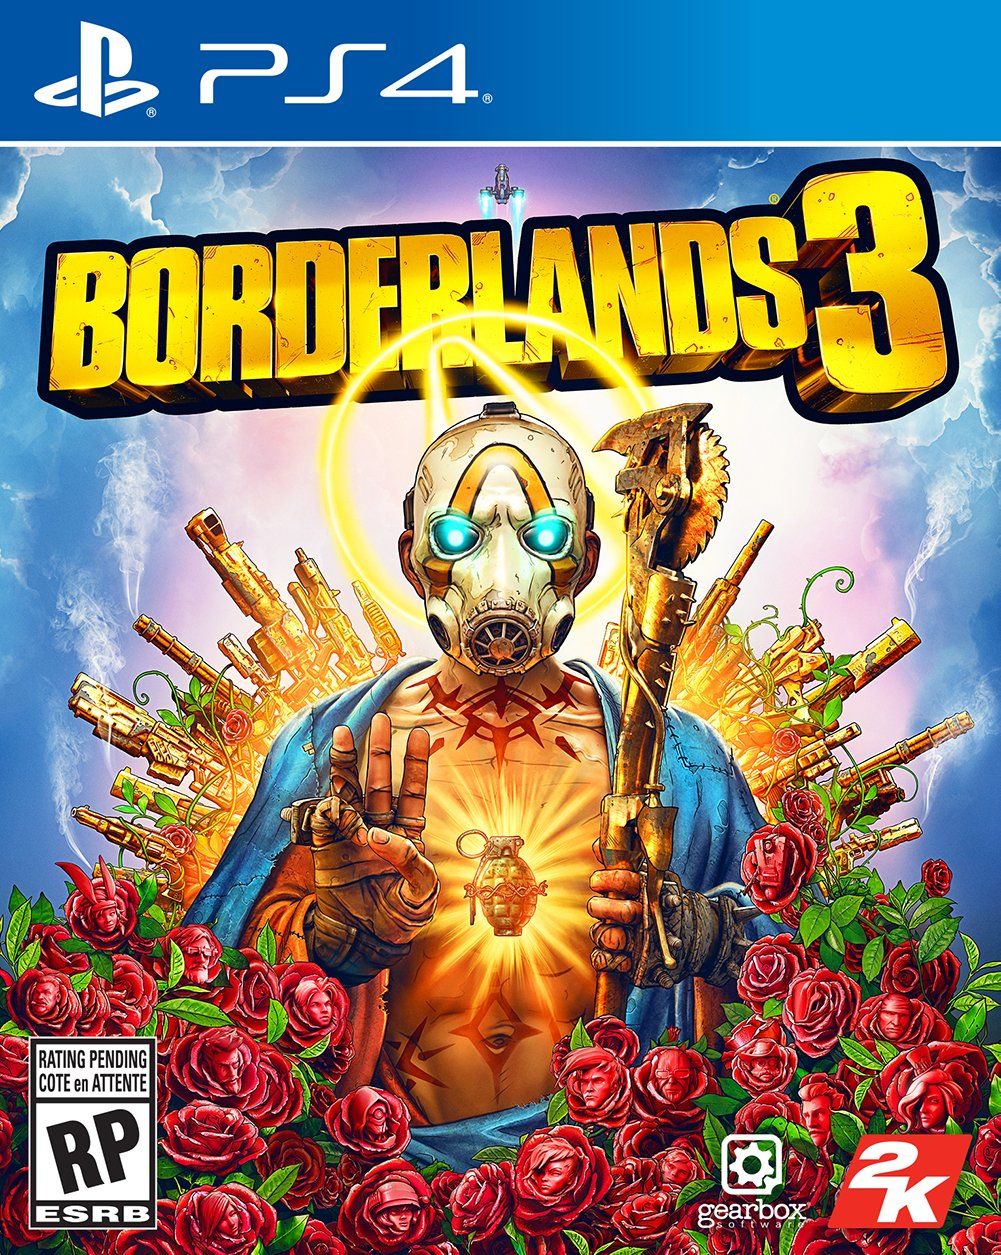 Borderlands 3'ün çiçek gibi, muhteşem kapak tasarımı yayınlandı